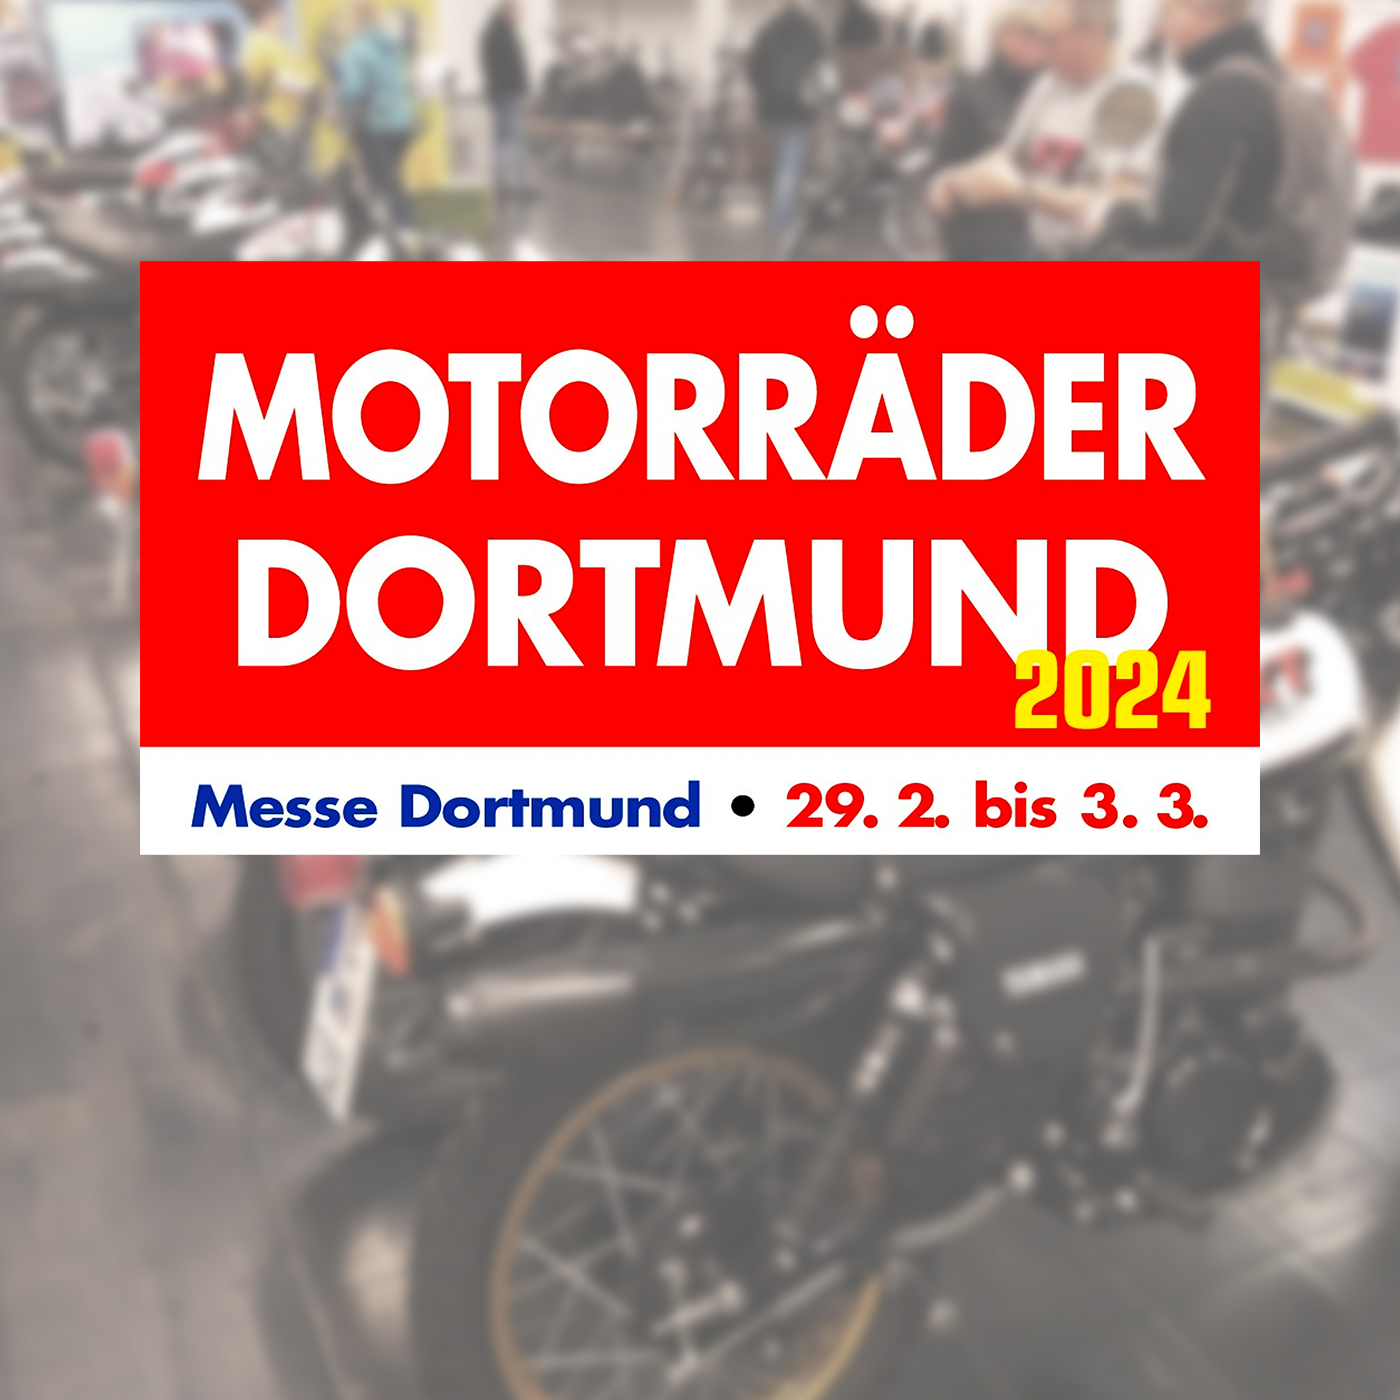 Trade fair tip: Motorcycles Dortmund 2024